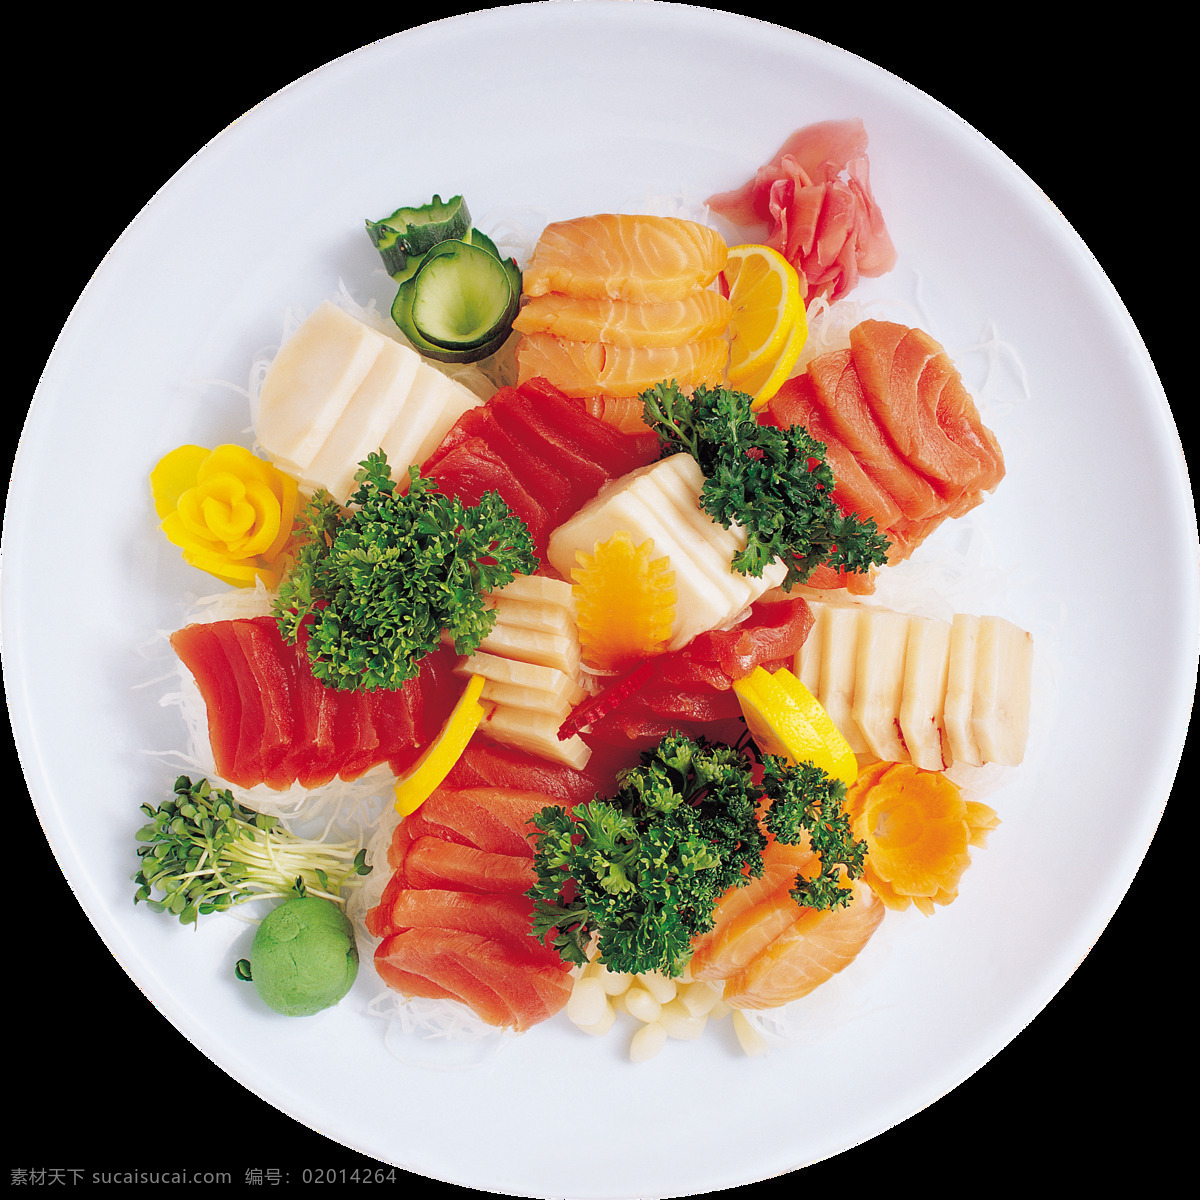 精致 切片 三文鱼 料理 美食 产品 实物 白色盘子 产品实物 日式料理 日式美食